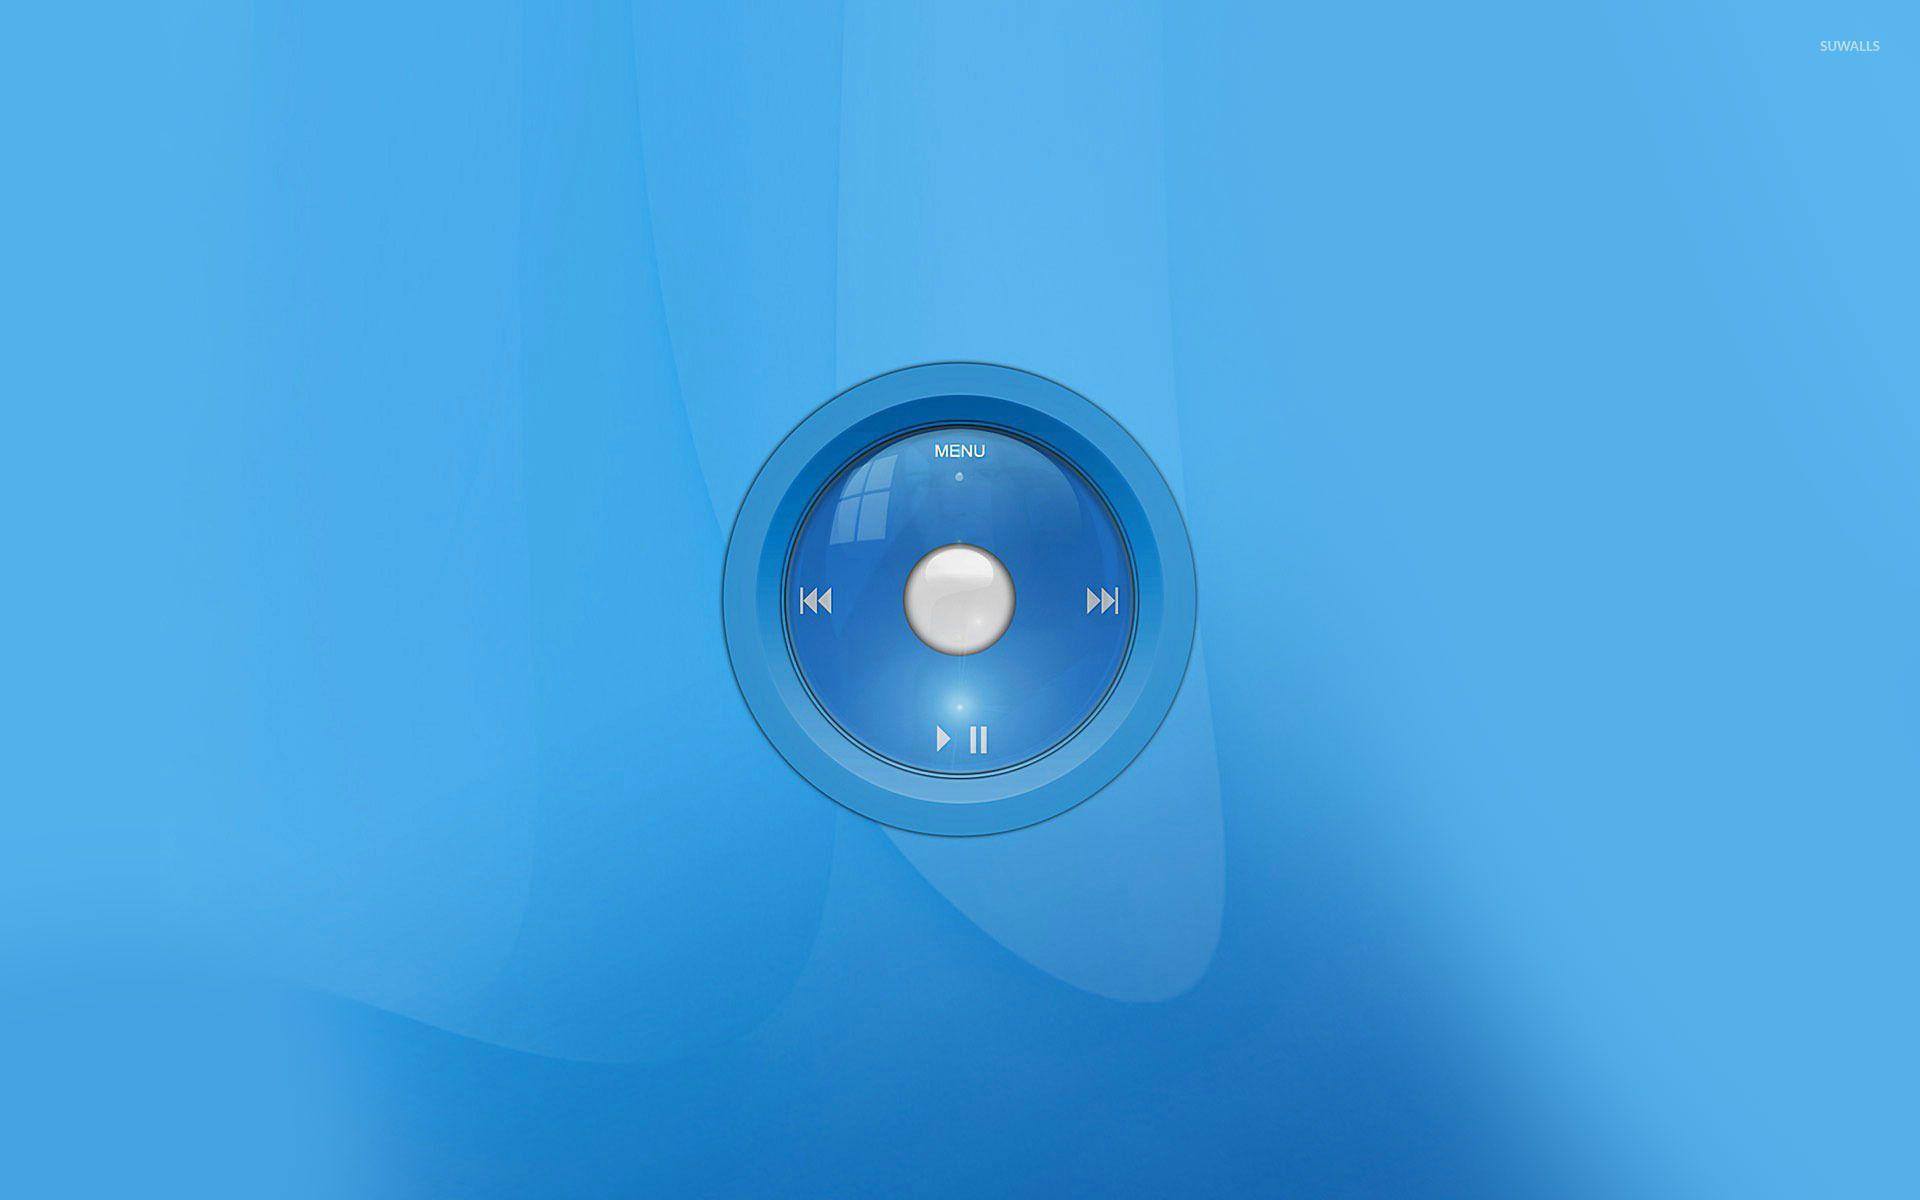 iPod navigation button wallpaper wallpaper